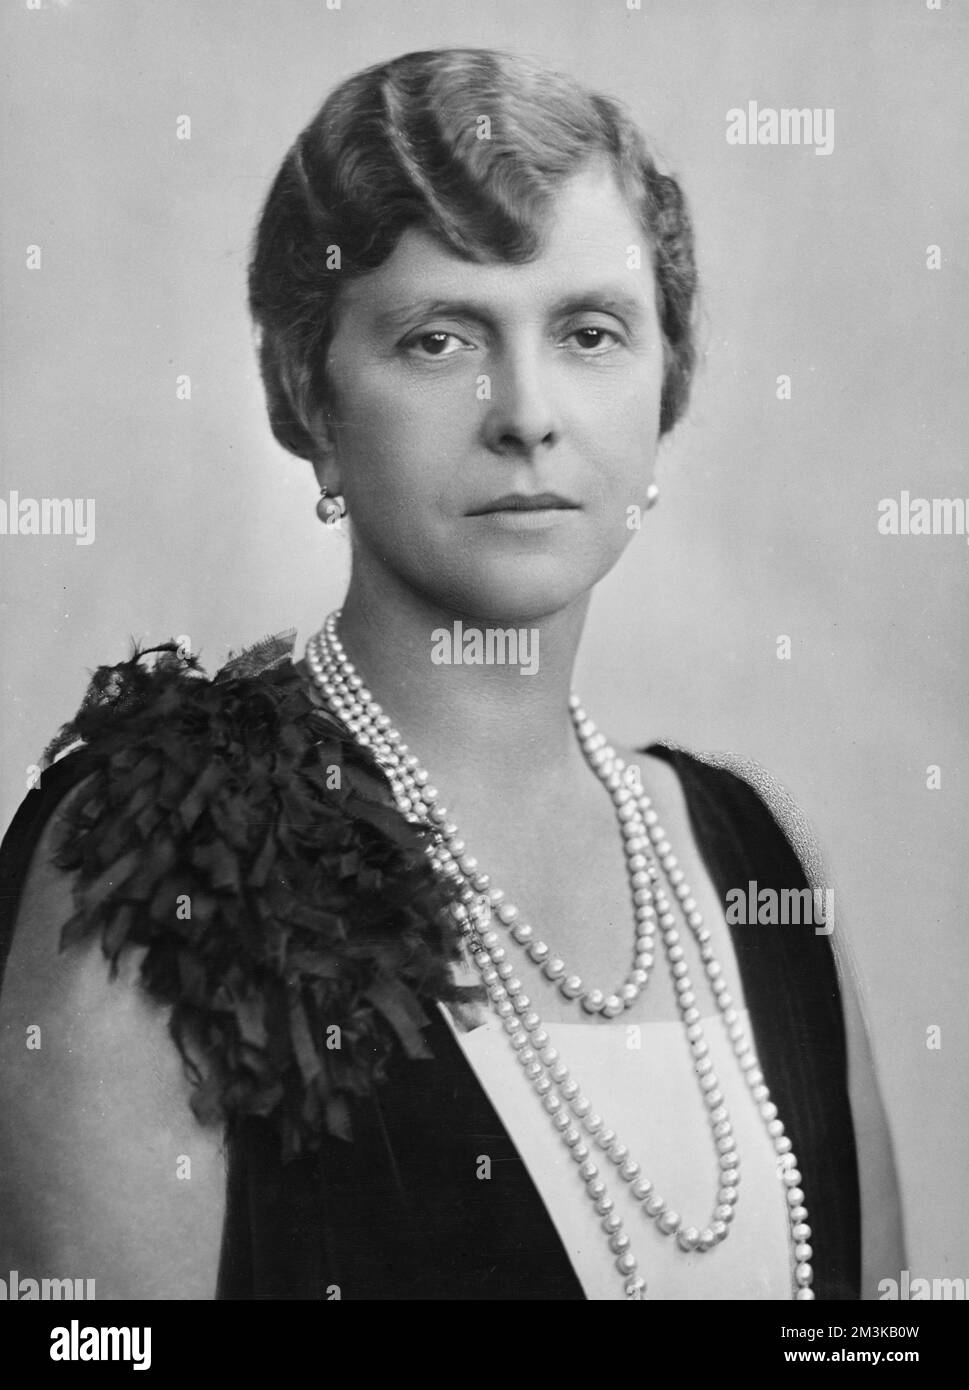 Principessa Andrea di Grecia, ex Principessa Alice di Battenberg o Mountbatten (1885 - 1969), nipote della regina Vittoria e moglie del principe Andrea di Grecia. Madre del Principe Filippo, Duca di Edimburgo. Data: 1927 Foto Stock